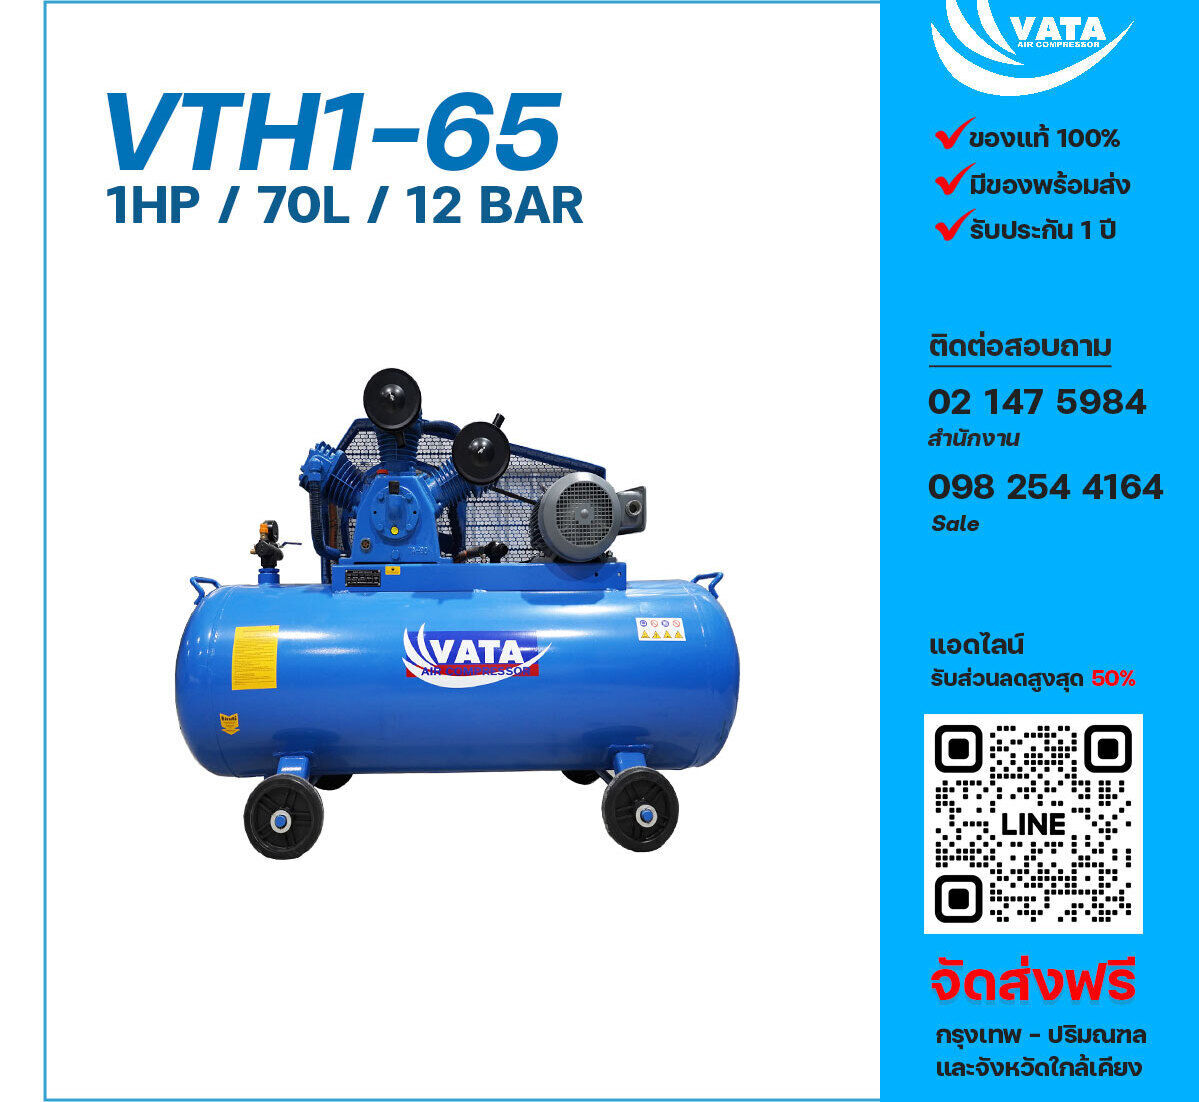 ปั๊มลมวาตะแรงดันสูง VATA Two-Stage VTH1-65 220V ปั๊มลมลูกสูบ ขนาด 3 สูบ 1 แรงม้า 70 ลิตร VATA พร้อมมอเตอร์ ไฟ 220V ส่งฟรี กรุงเทพฯ-ปริมณฑล รับประกัน 1 ปี